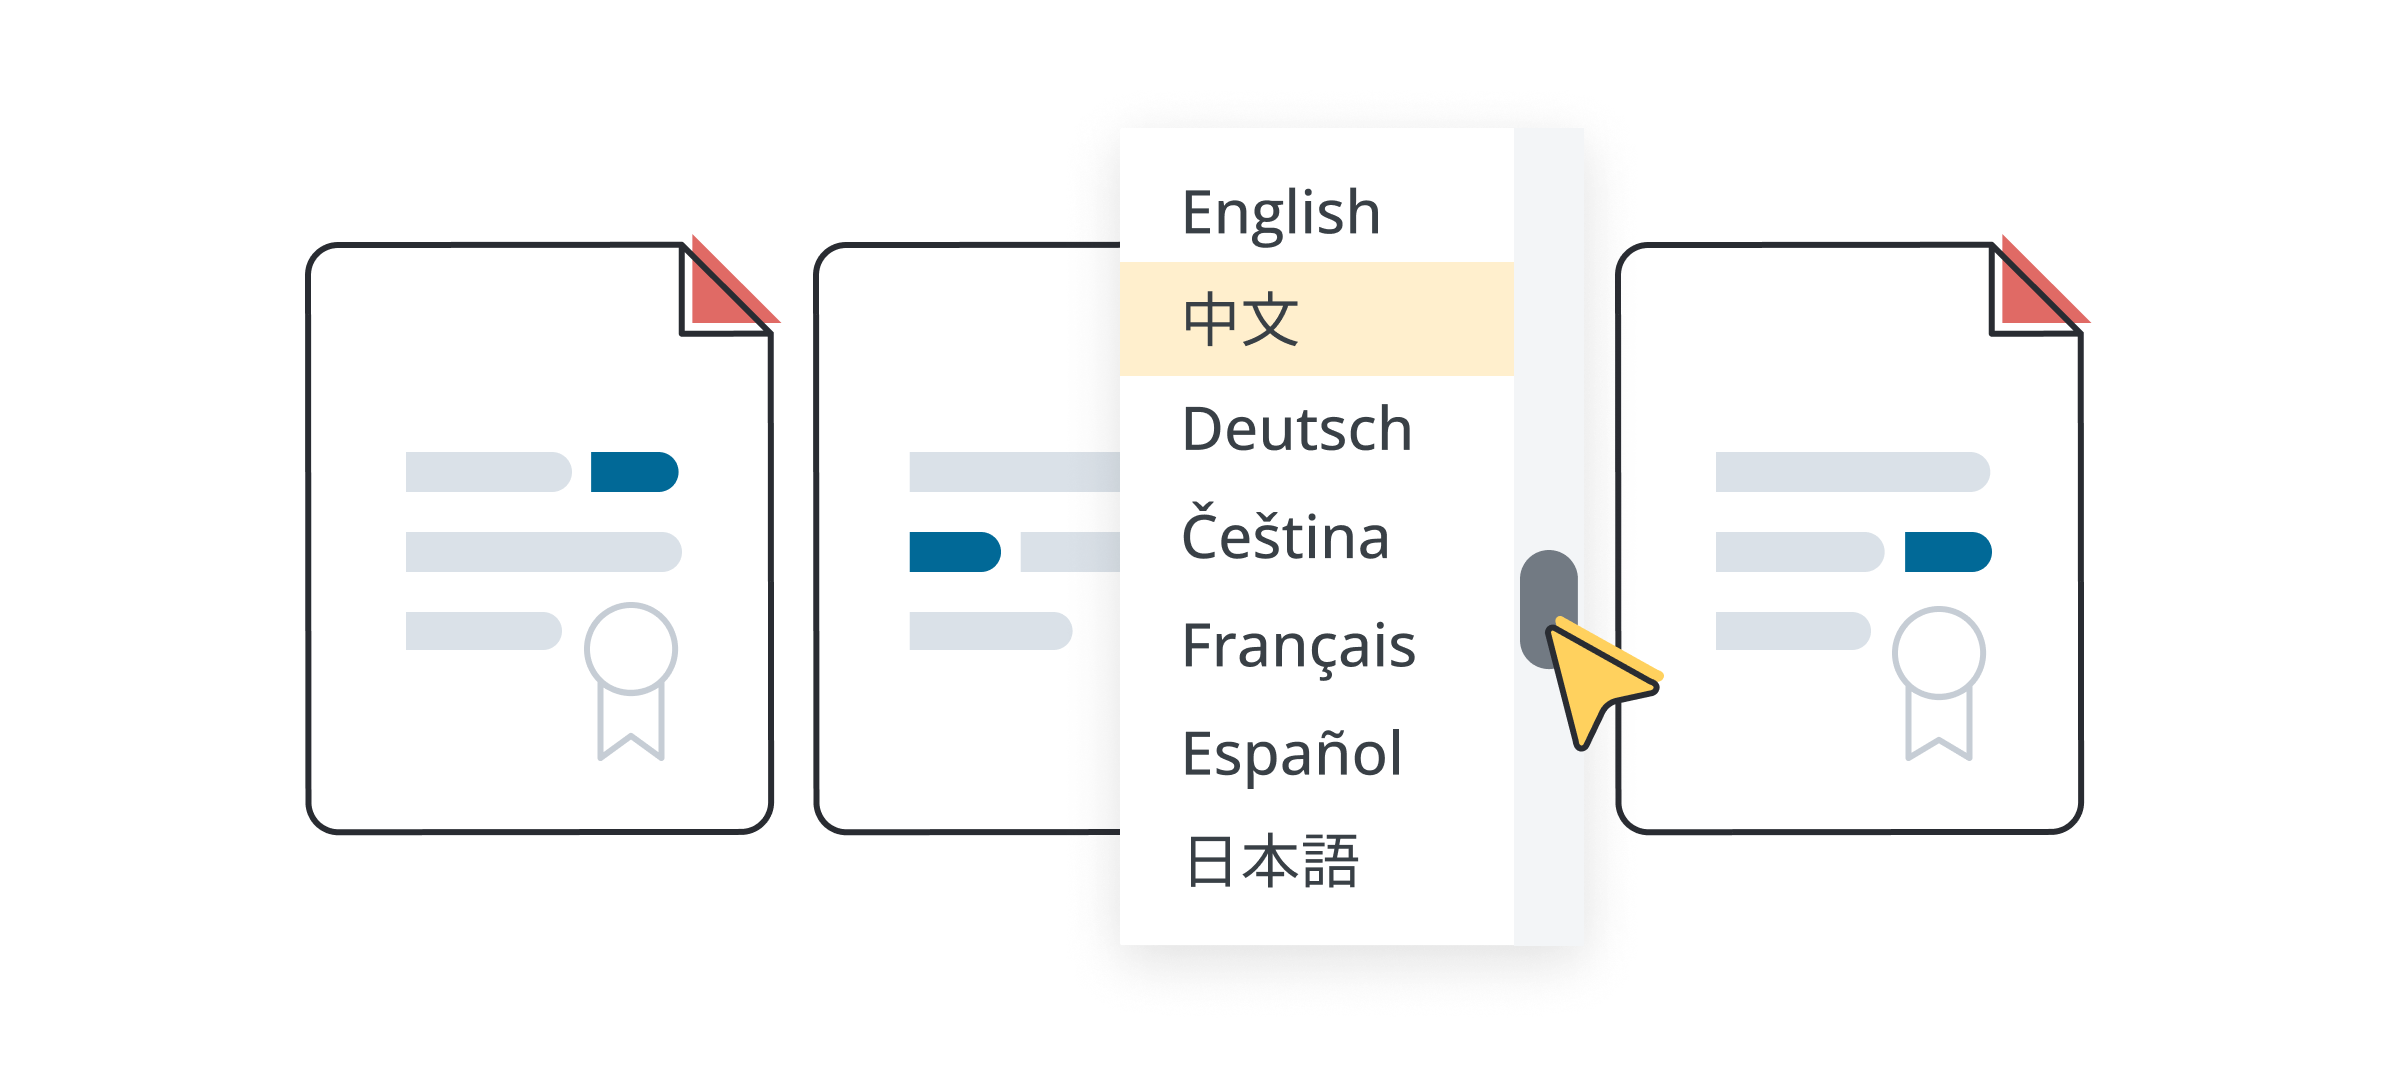 Иллюстрация с изображением трех юридических документов и выпадающего меню ИИ-переводчика со списком языков. 